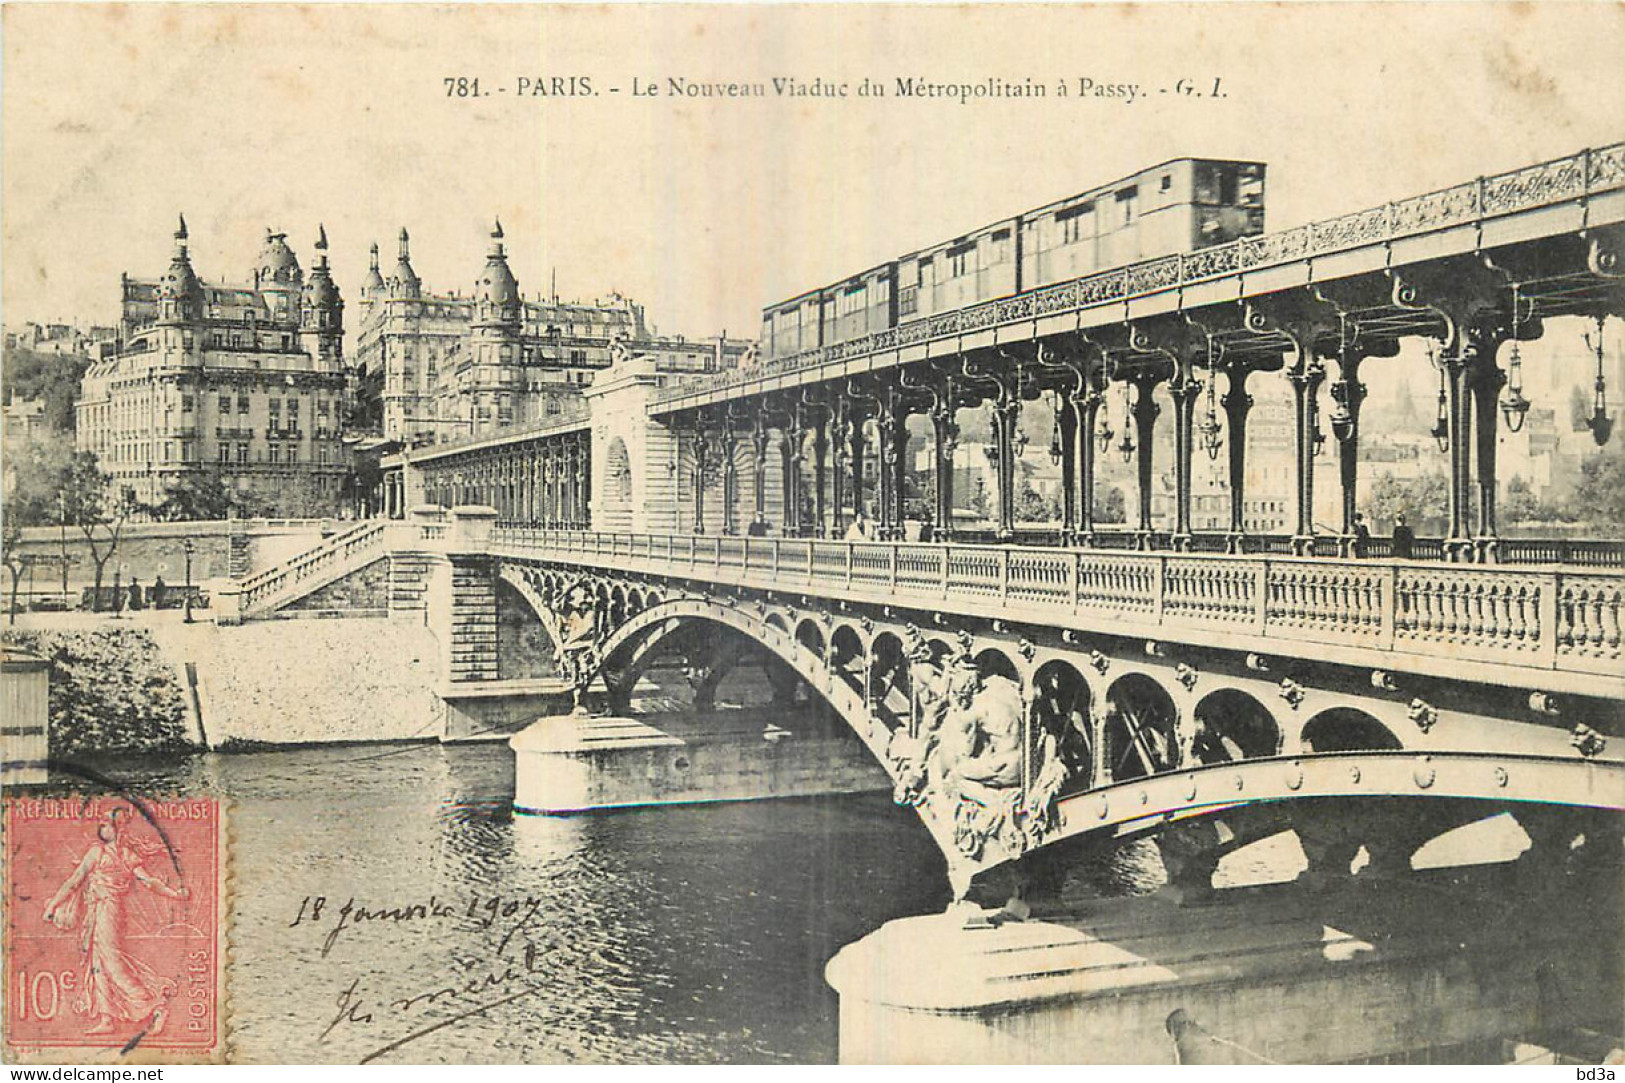 75 - PARIS - NOUVEAU VIADUC DU METROPOLITAIN A PASSY - Métro Parisien, Gares